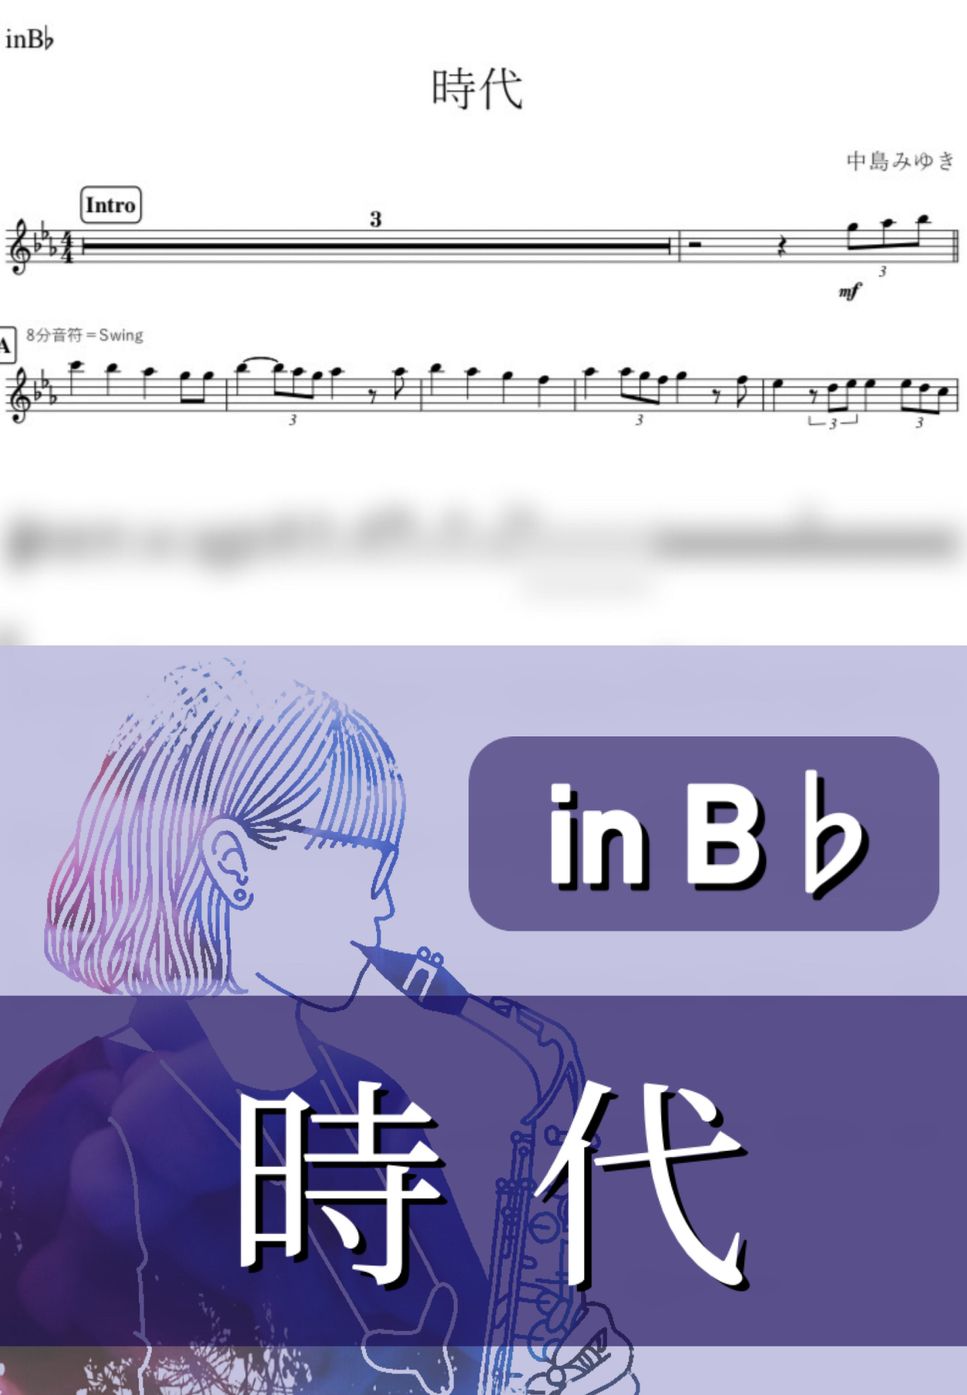 中島みゆき - 時代 (B♭) by kanamusic